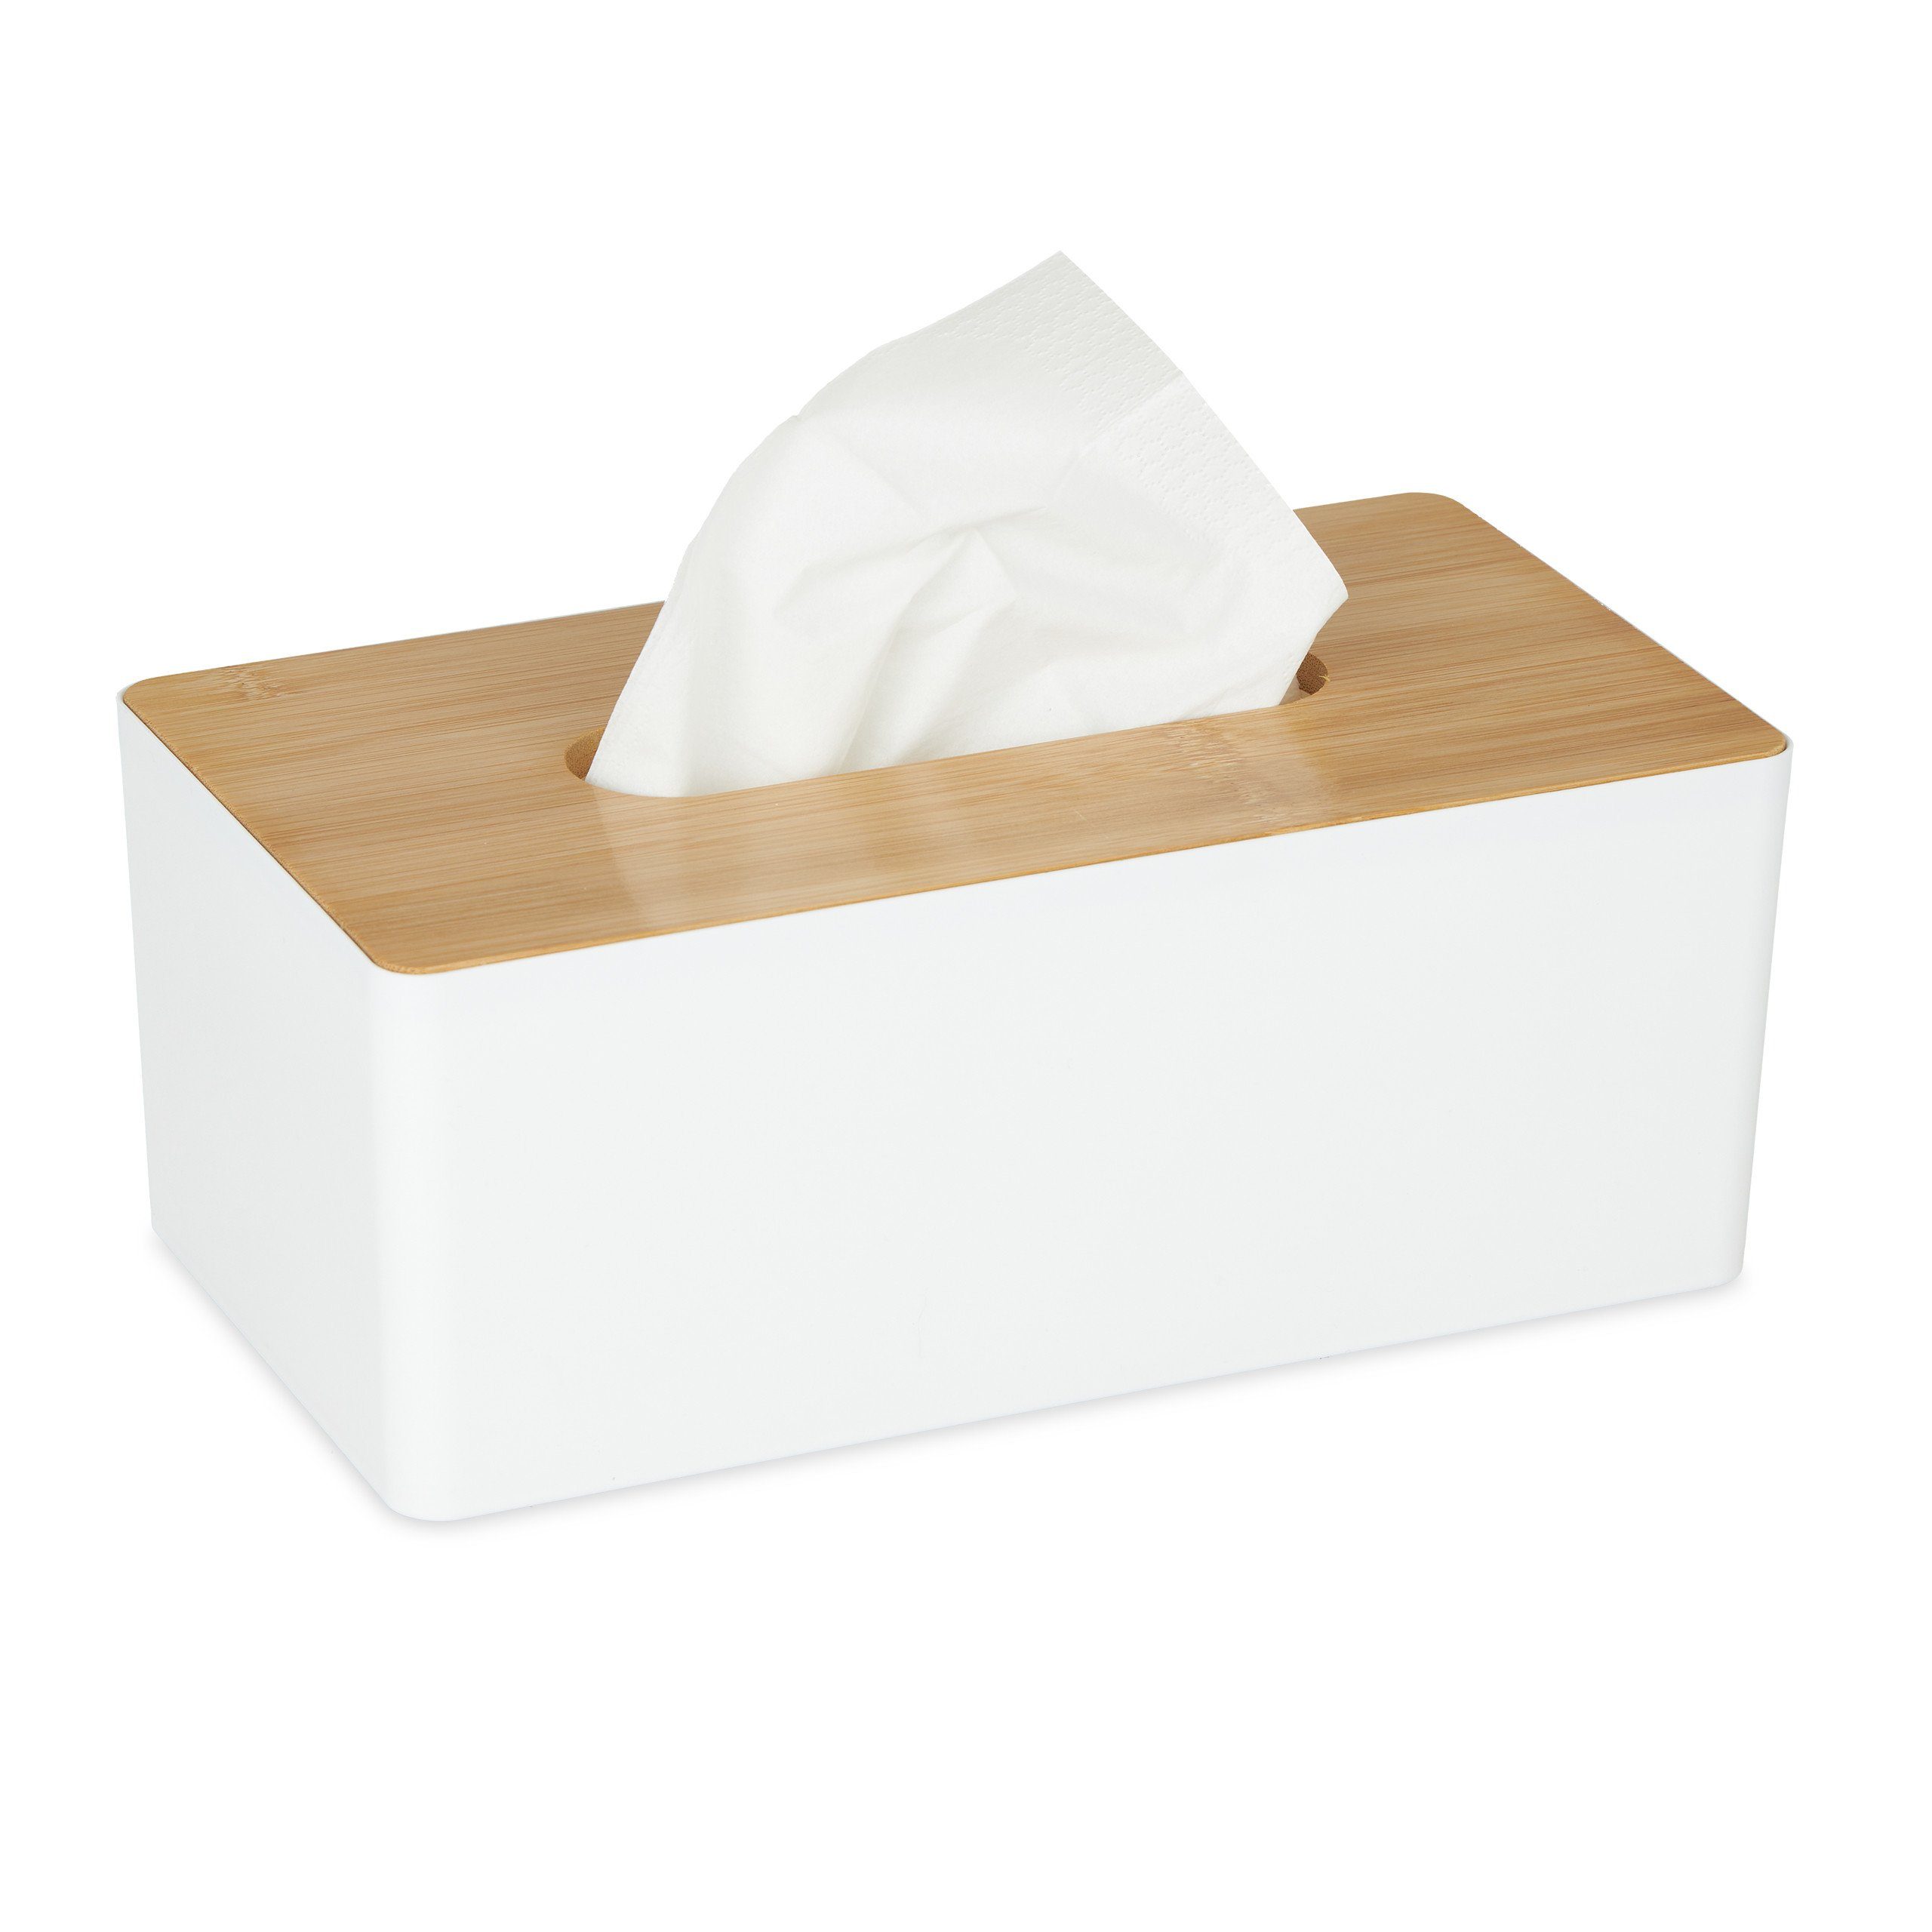 relaxdays Papiertuchbox Weiße Tücherbox mit Bambusdeckel